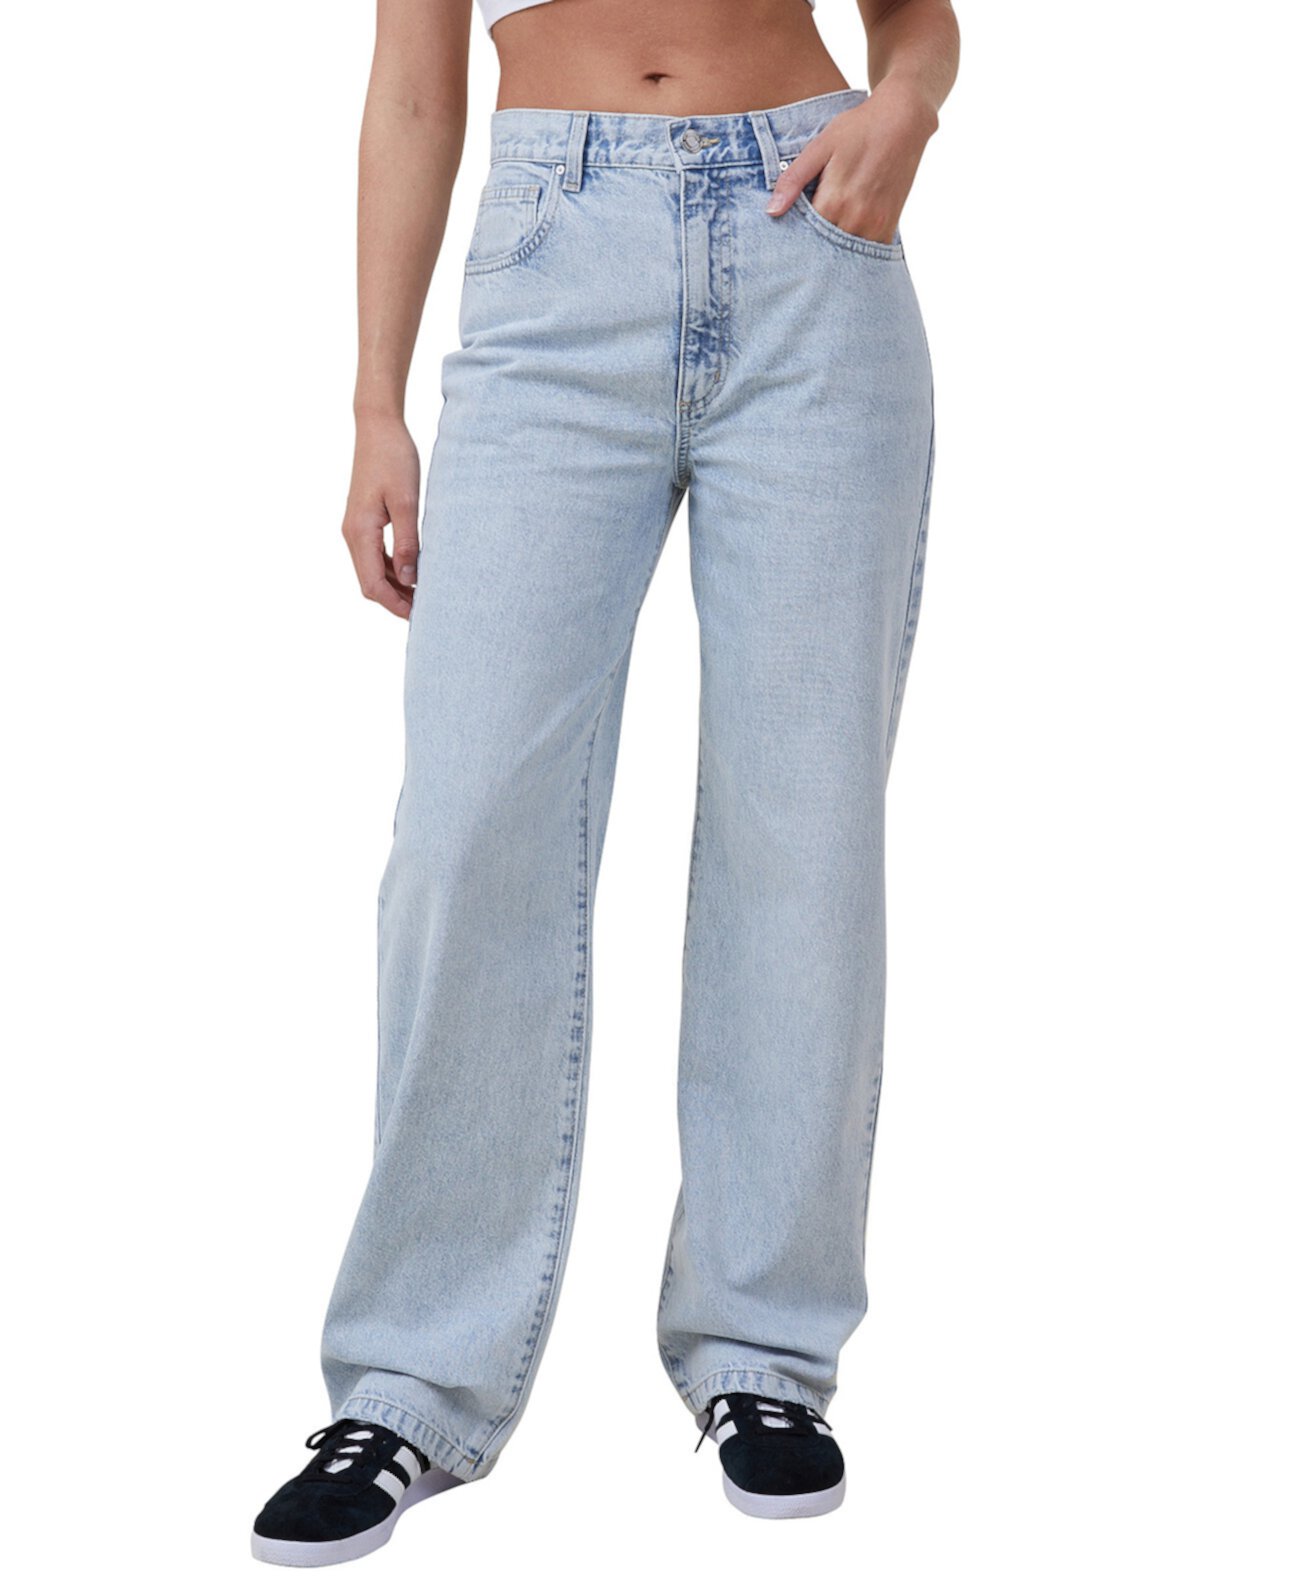 Джинсы хлопок. Хлопковые джинсы. Cotton джинсы. Cotton Jeans.